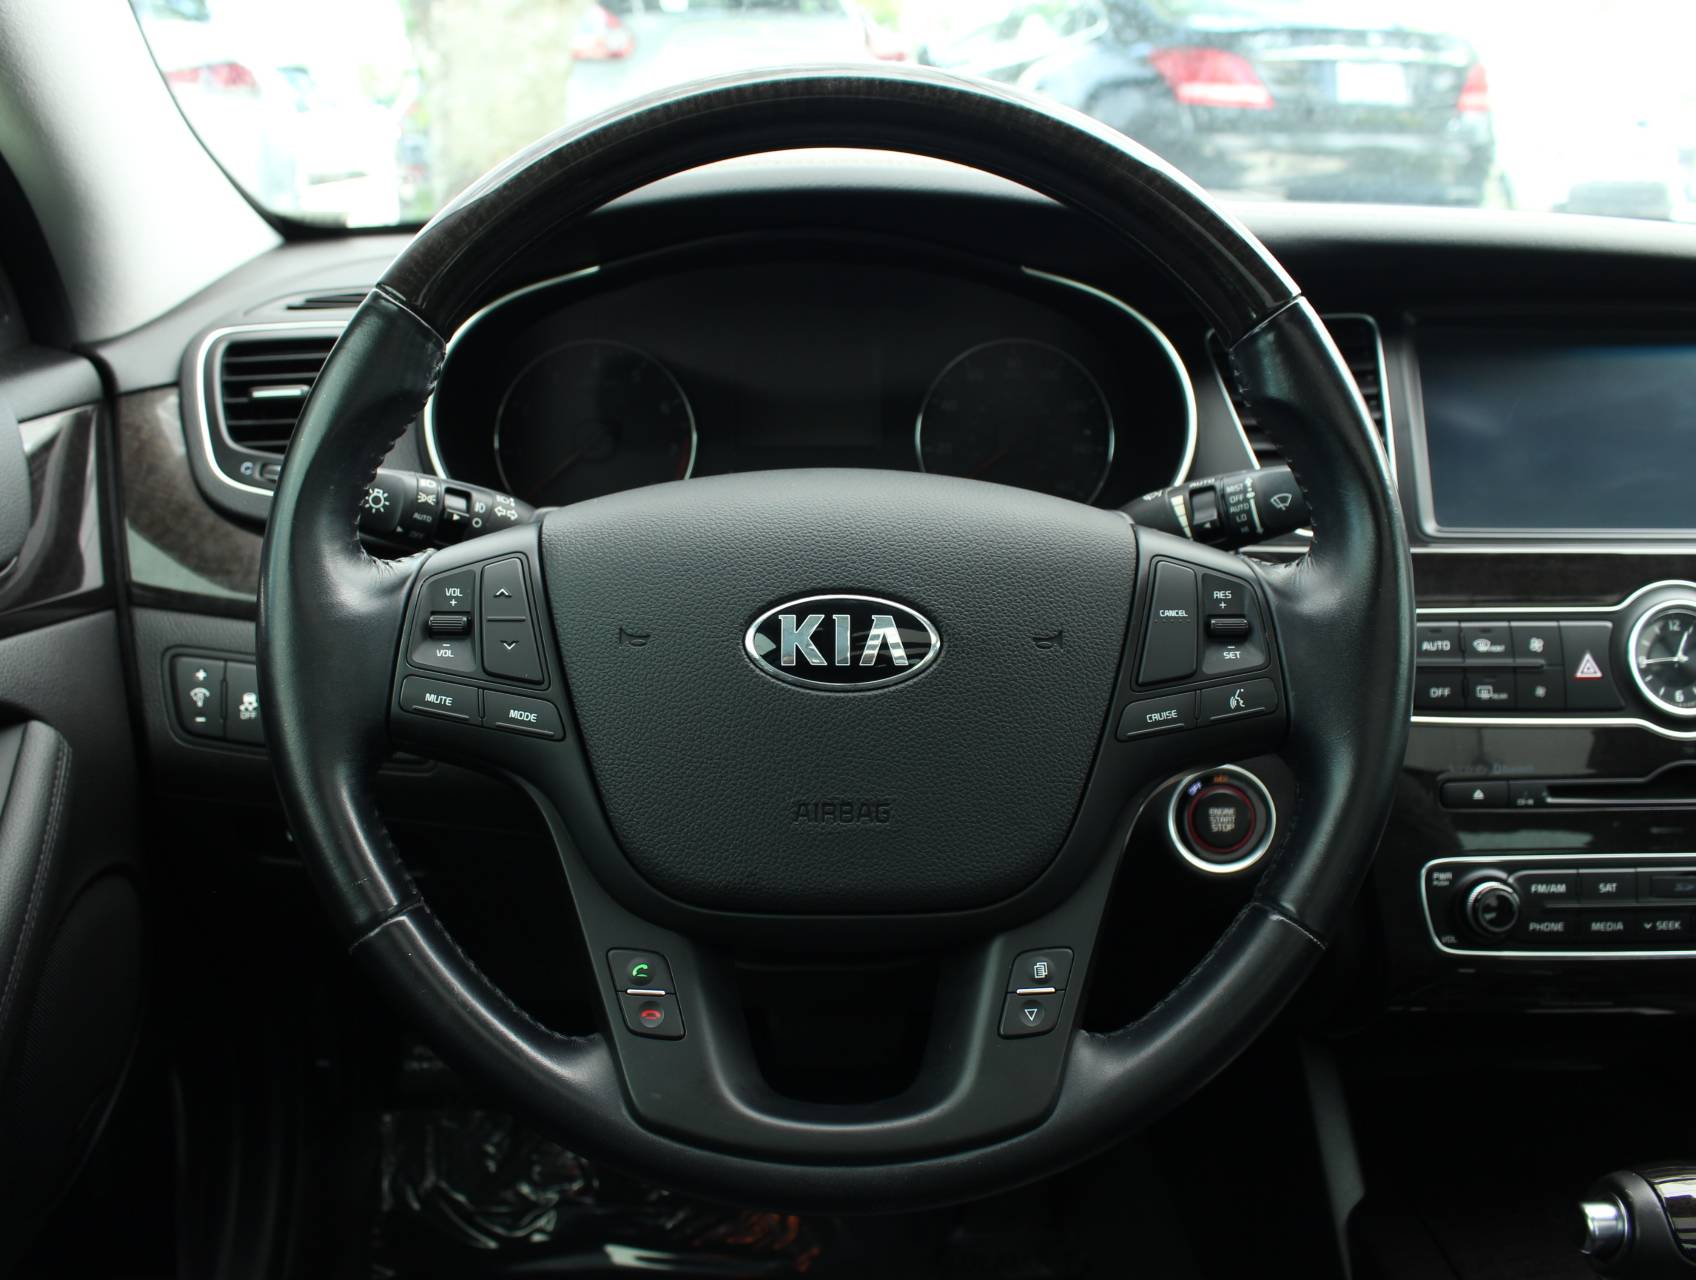 Florida Fine Cars - Used KIA CADENZA 2015 MARGATE Premium